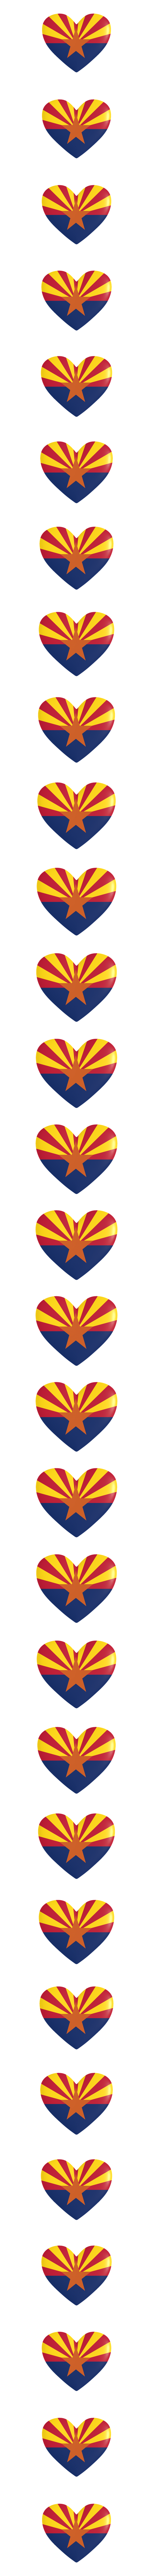 Arizona heart